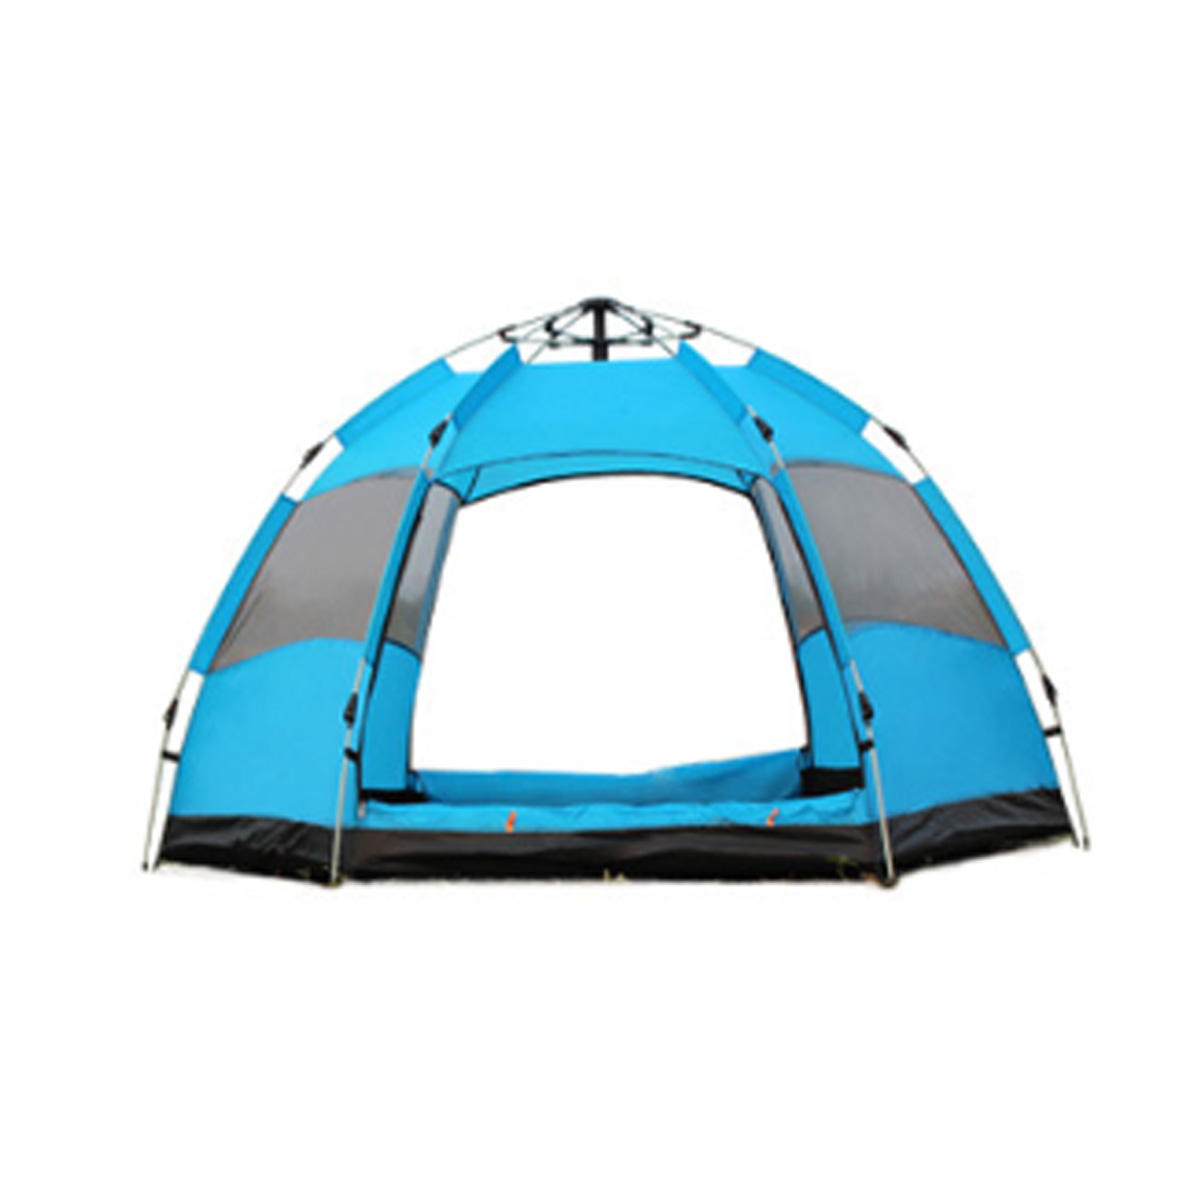 خيمة أوتوماتيكية مقاومة للماء لـ 3-5 أشخاص ، فتح سريع ، مثالية للتخييم والمشي لمسافات طويلة والصيد في الهواء الطلق ، مع ظل للشمس - برتقالي / أخضر / أزرق.